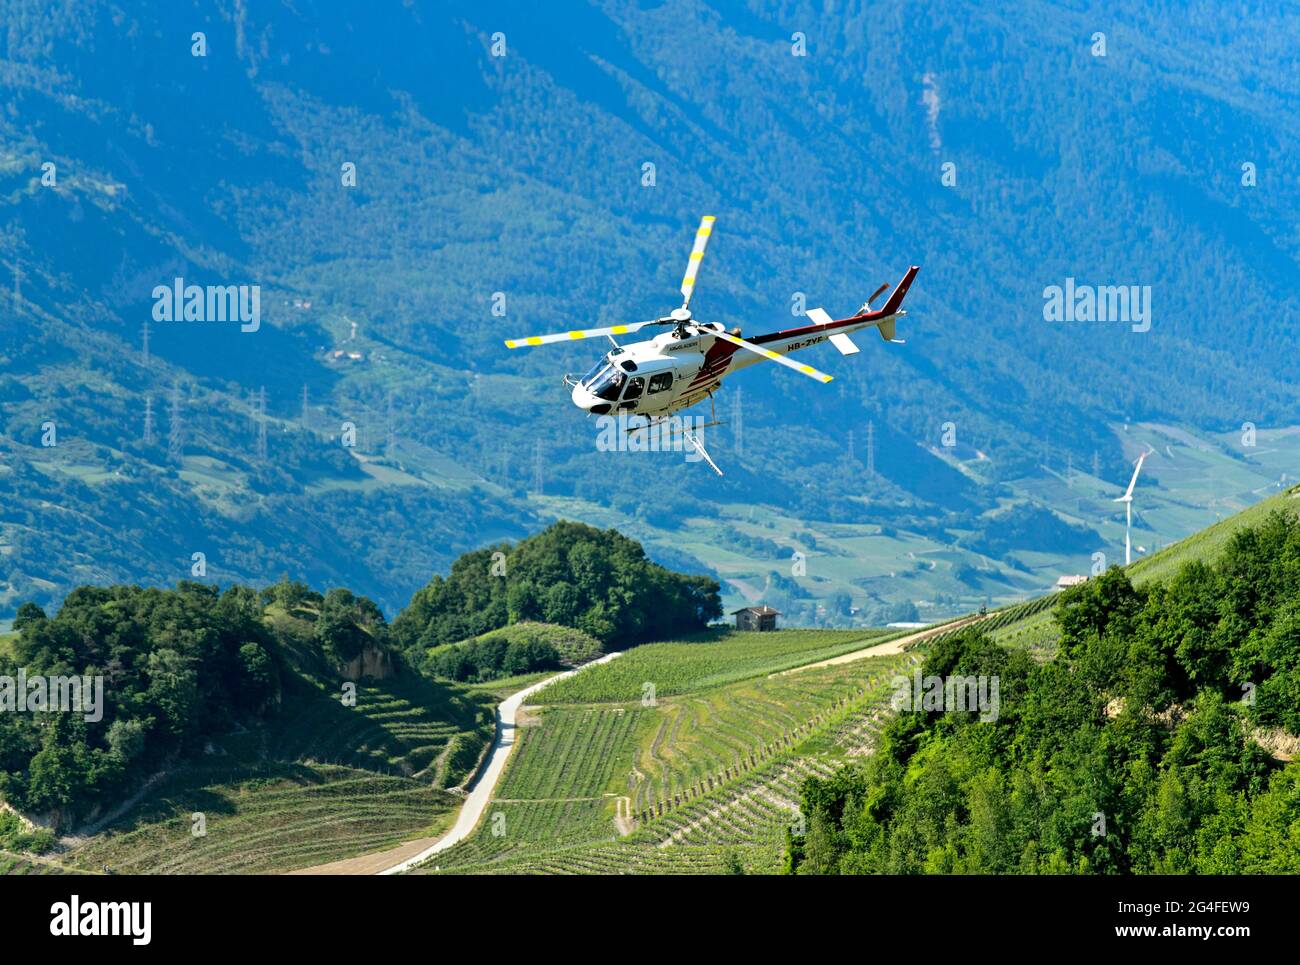 Der Helikopter Eurocopter AS350 B2 Ecureuil von Air-Glaciers SA sprüht Pestizide auf den Weinbergen im Weinanbaugebiet Leytron, Leytron, Wallis Stockfoto